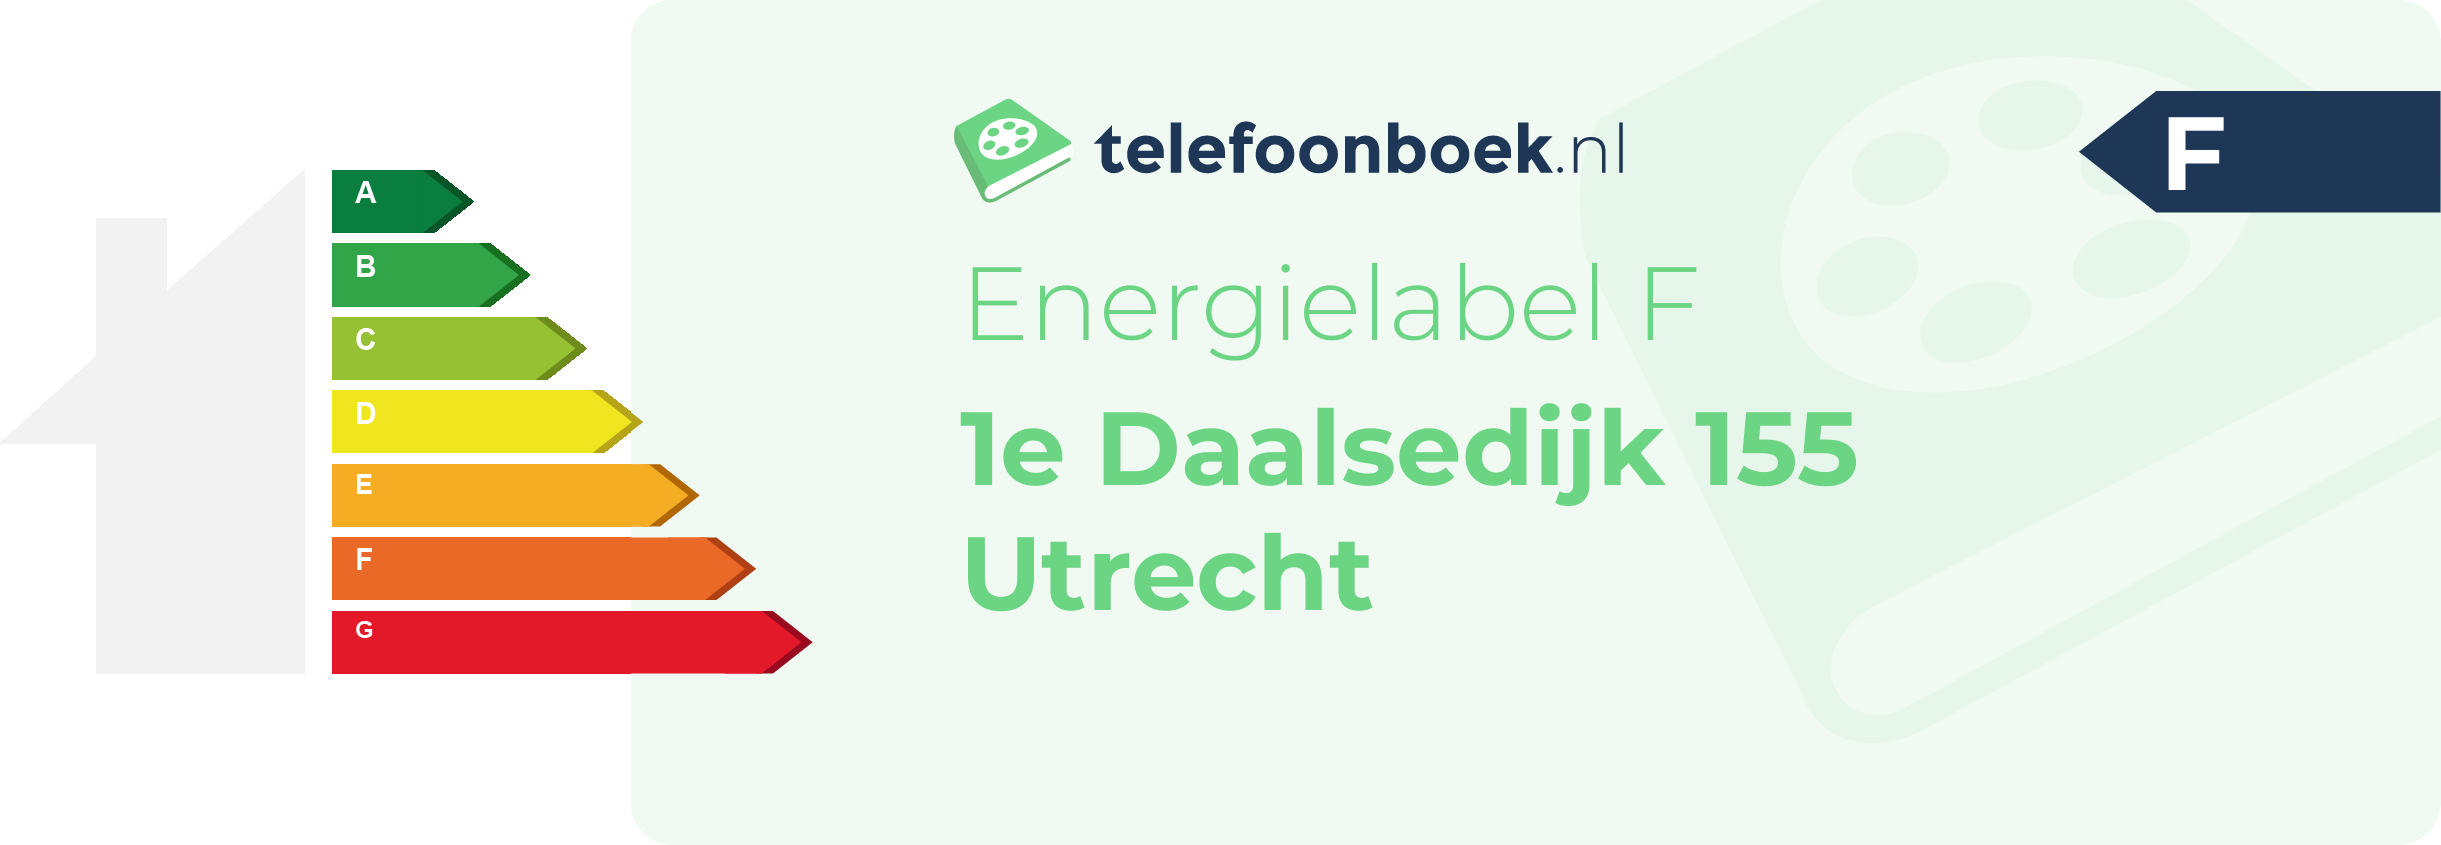 Energielabel 1e Daalsedijk 155 Utrecht